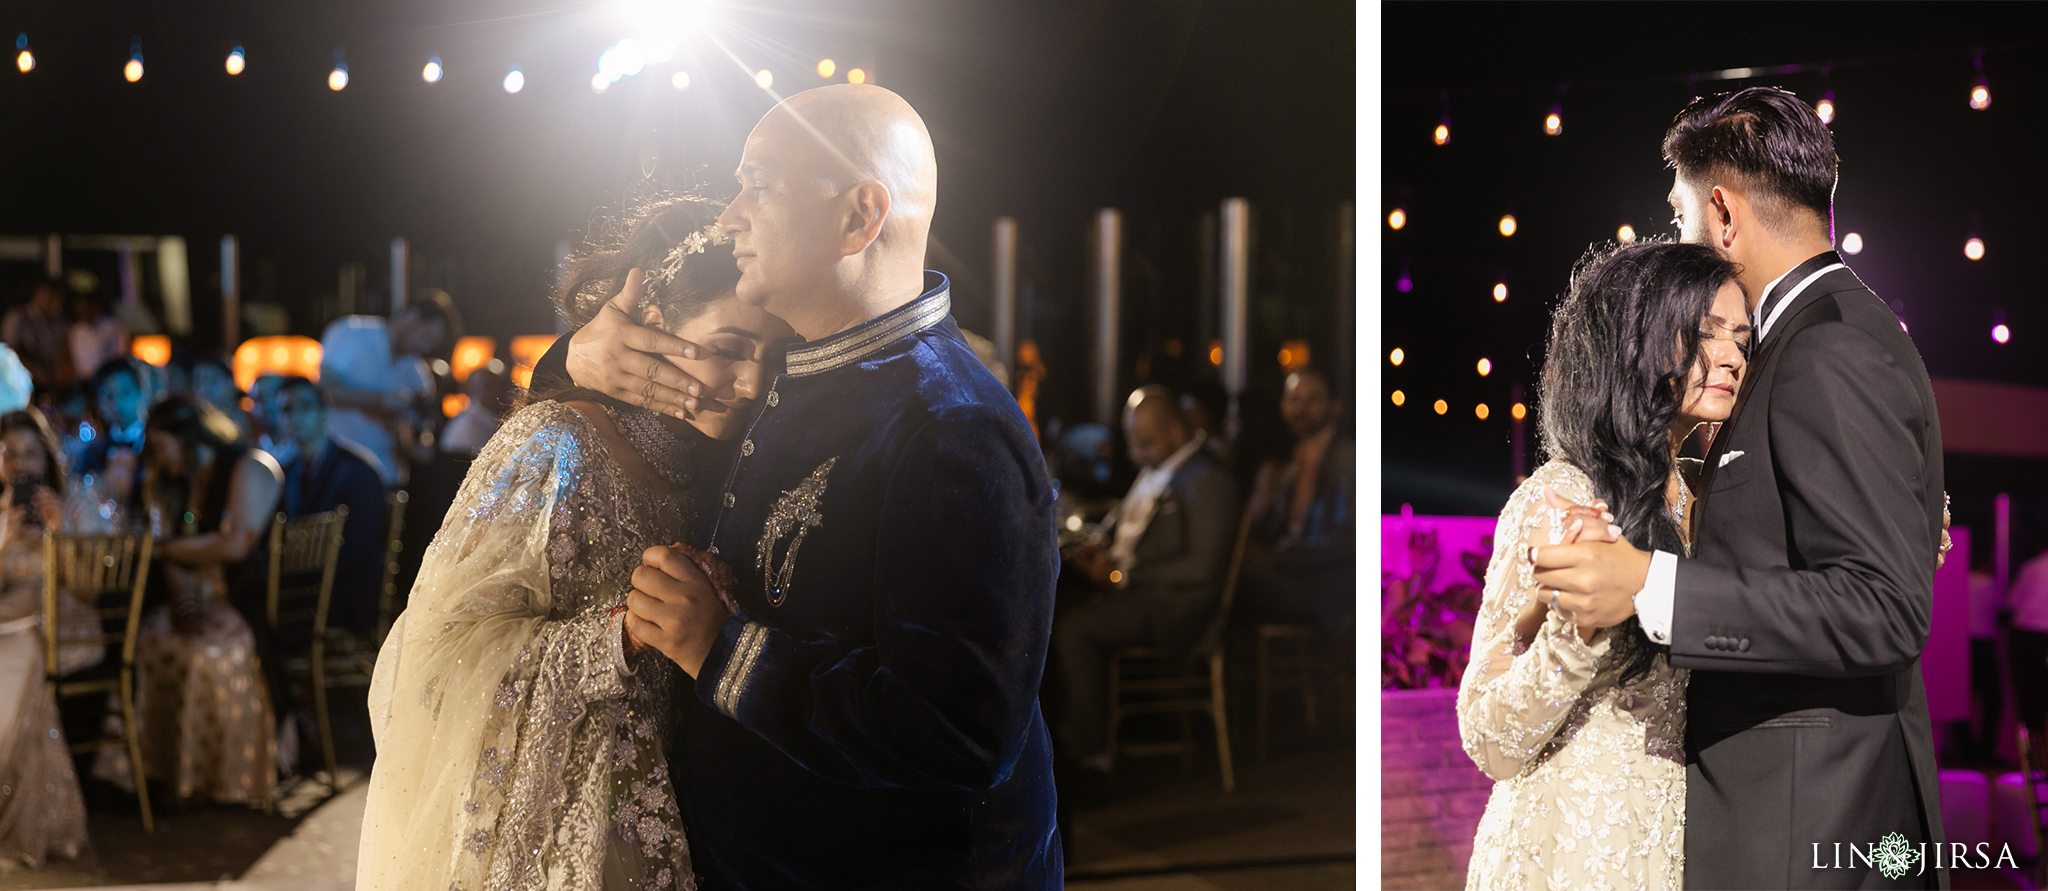 51 Generations El Dorado Royale Cancun Mexico Indian Wedding Reception Photography